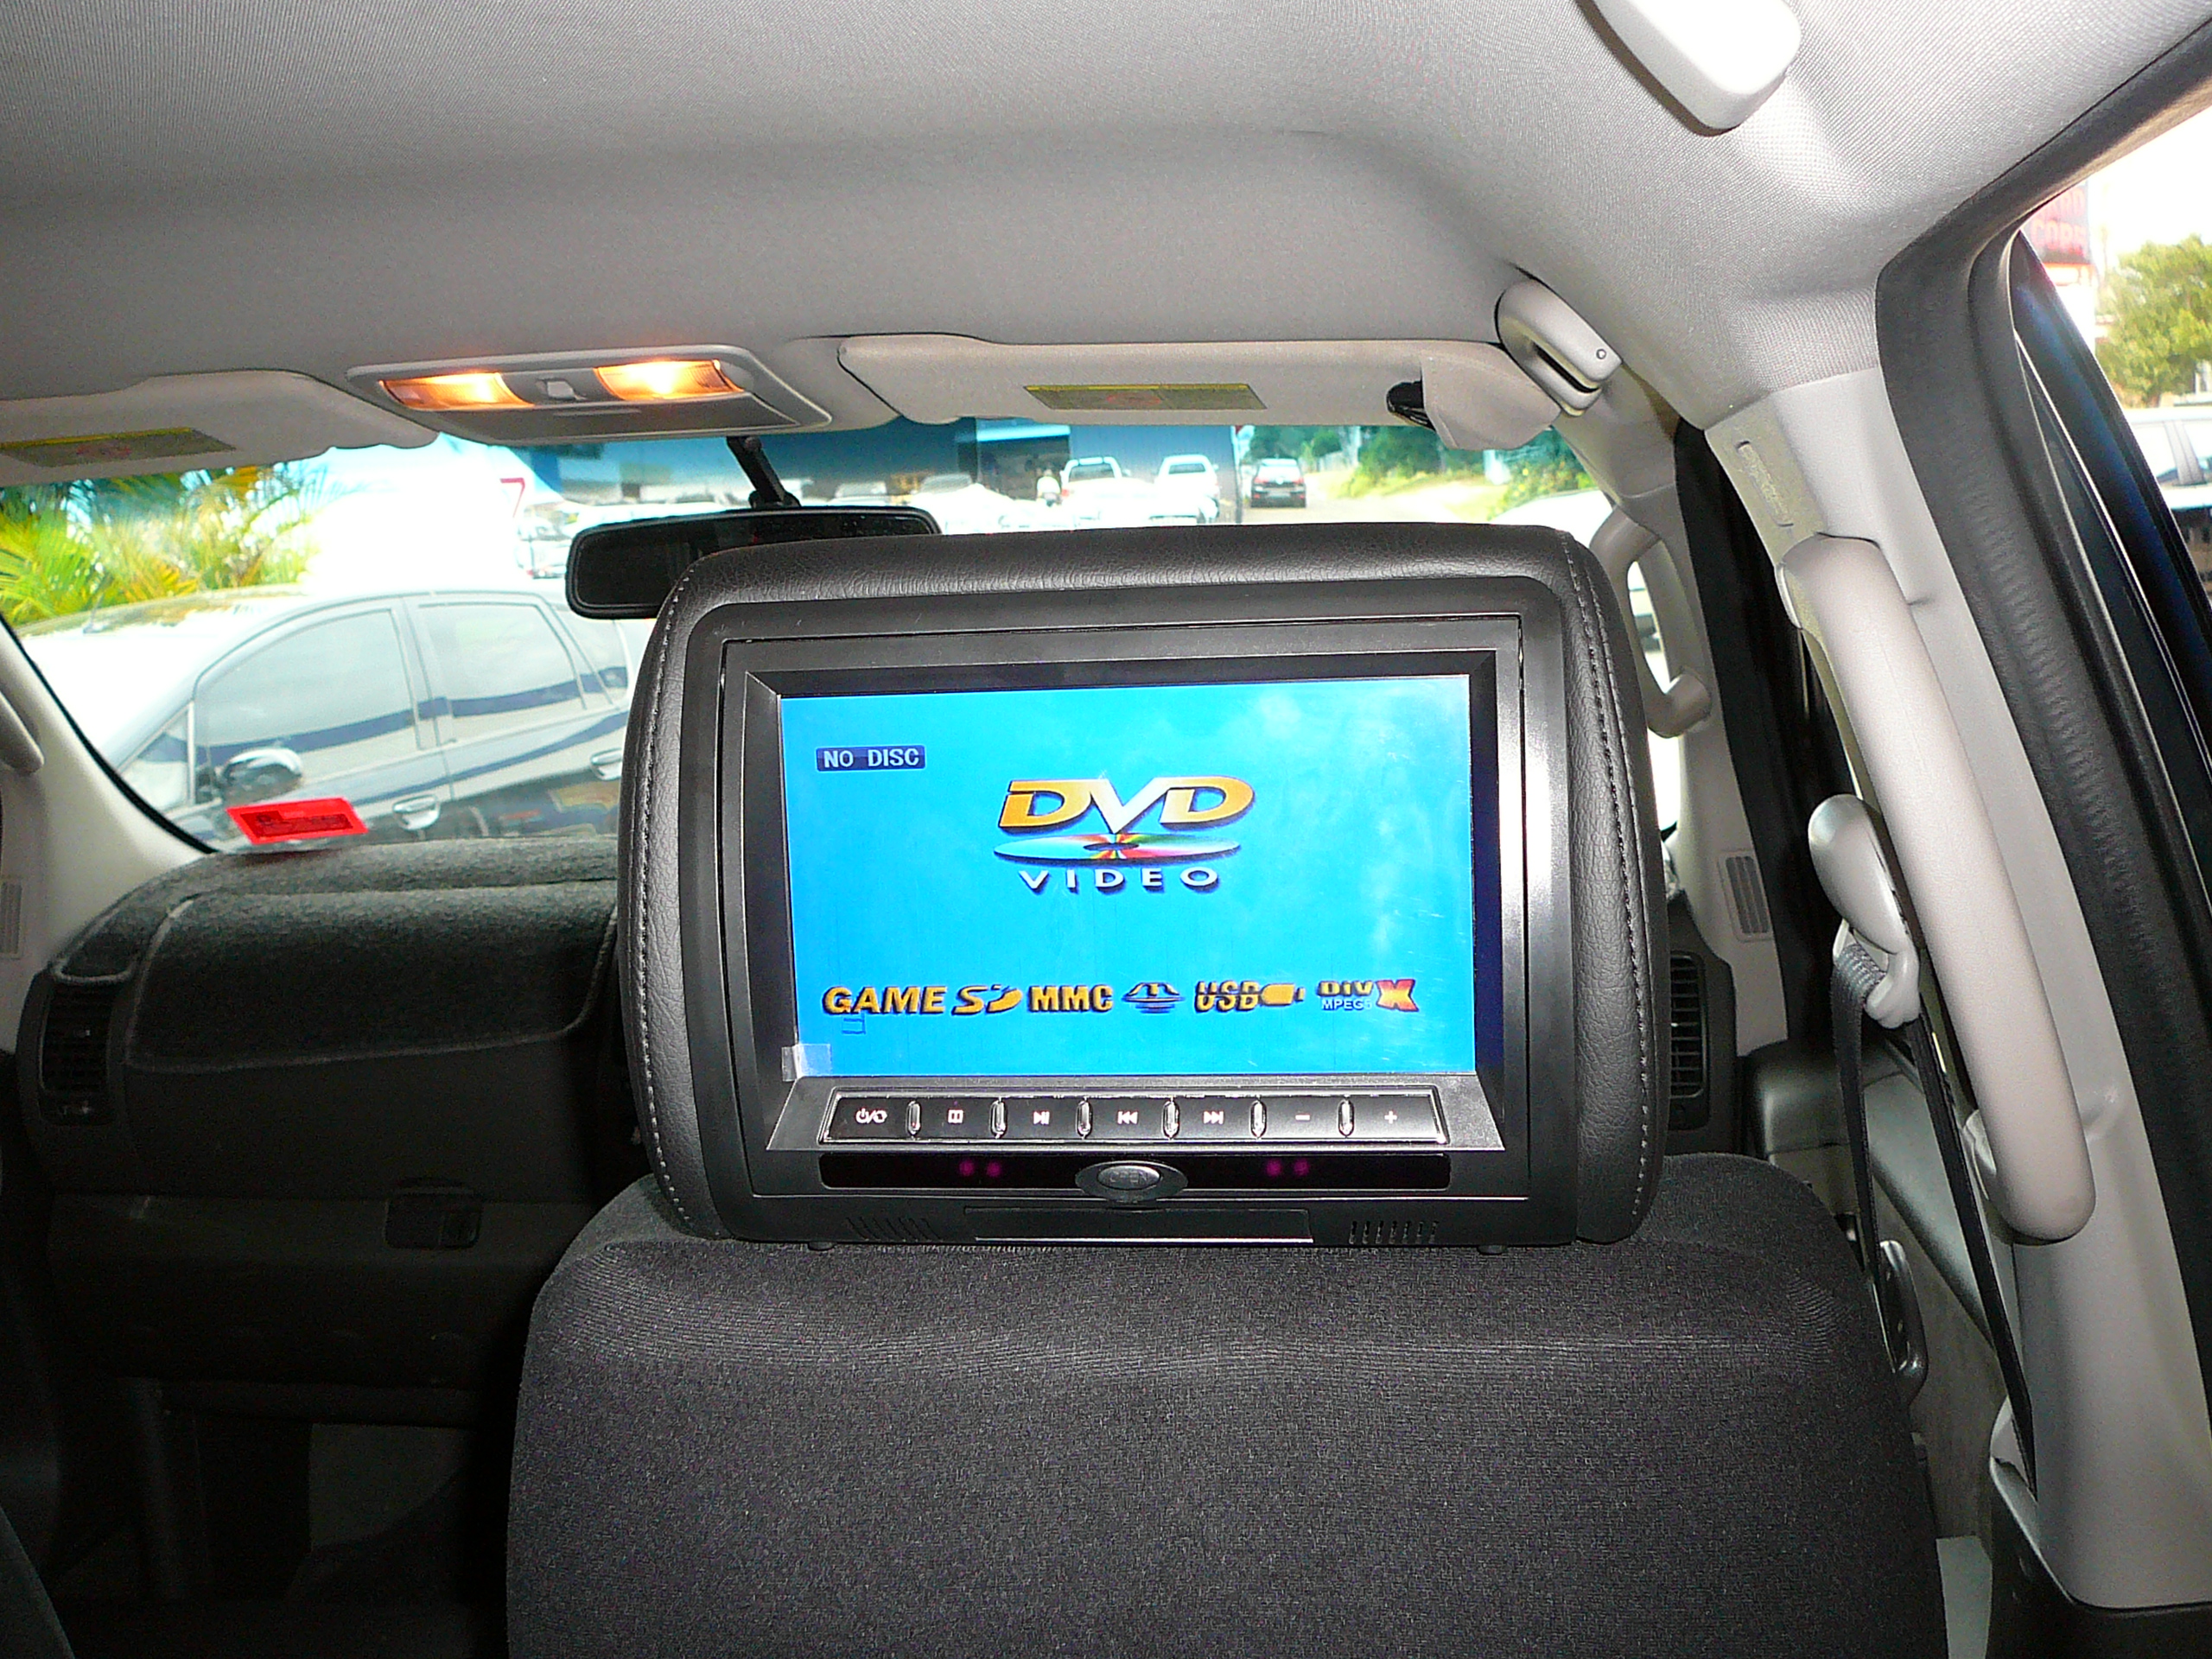 Nissan Pathfinder 2007, Nesa 9 inch DVD Head Rest Screens